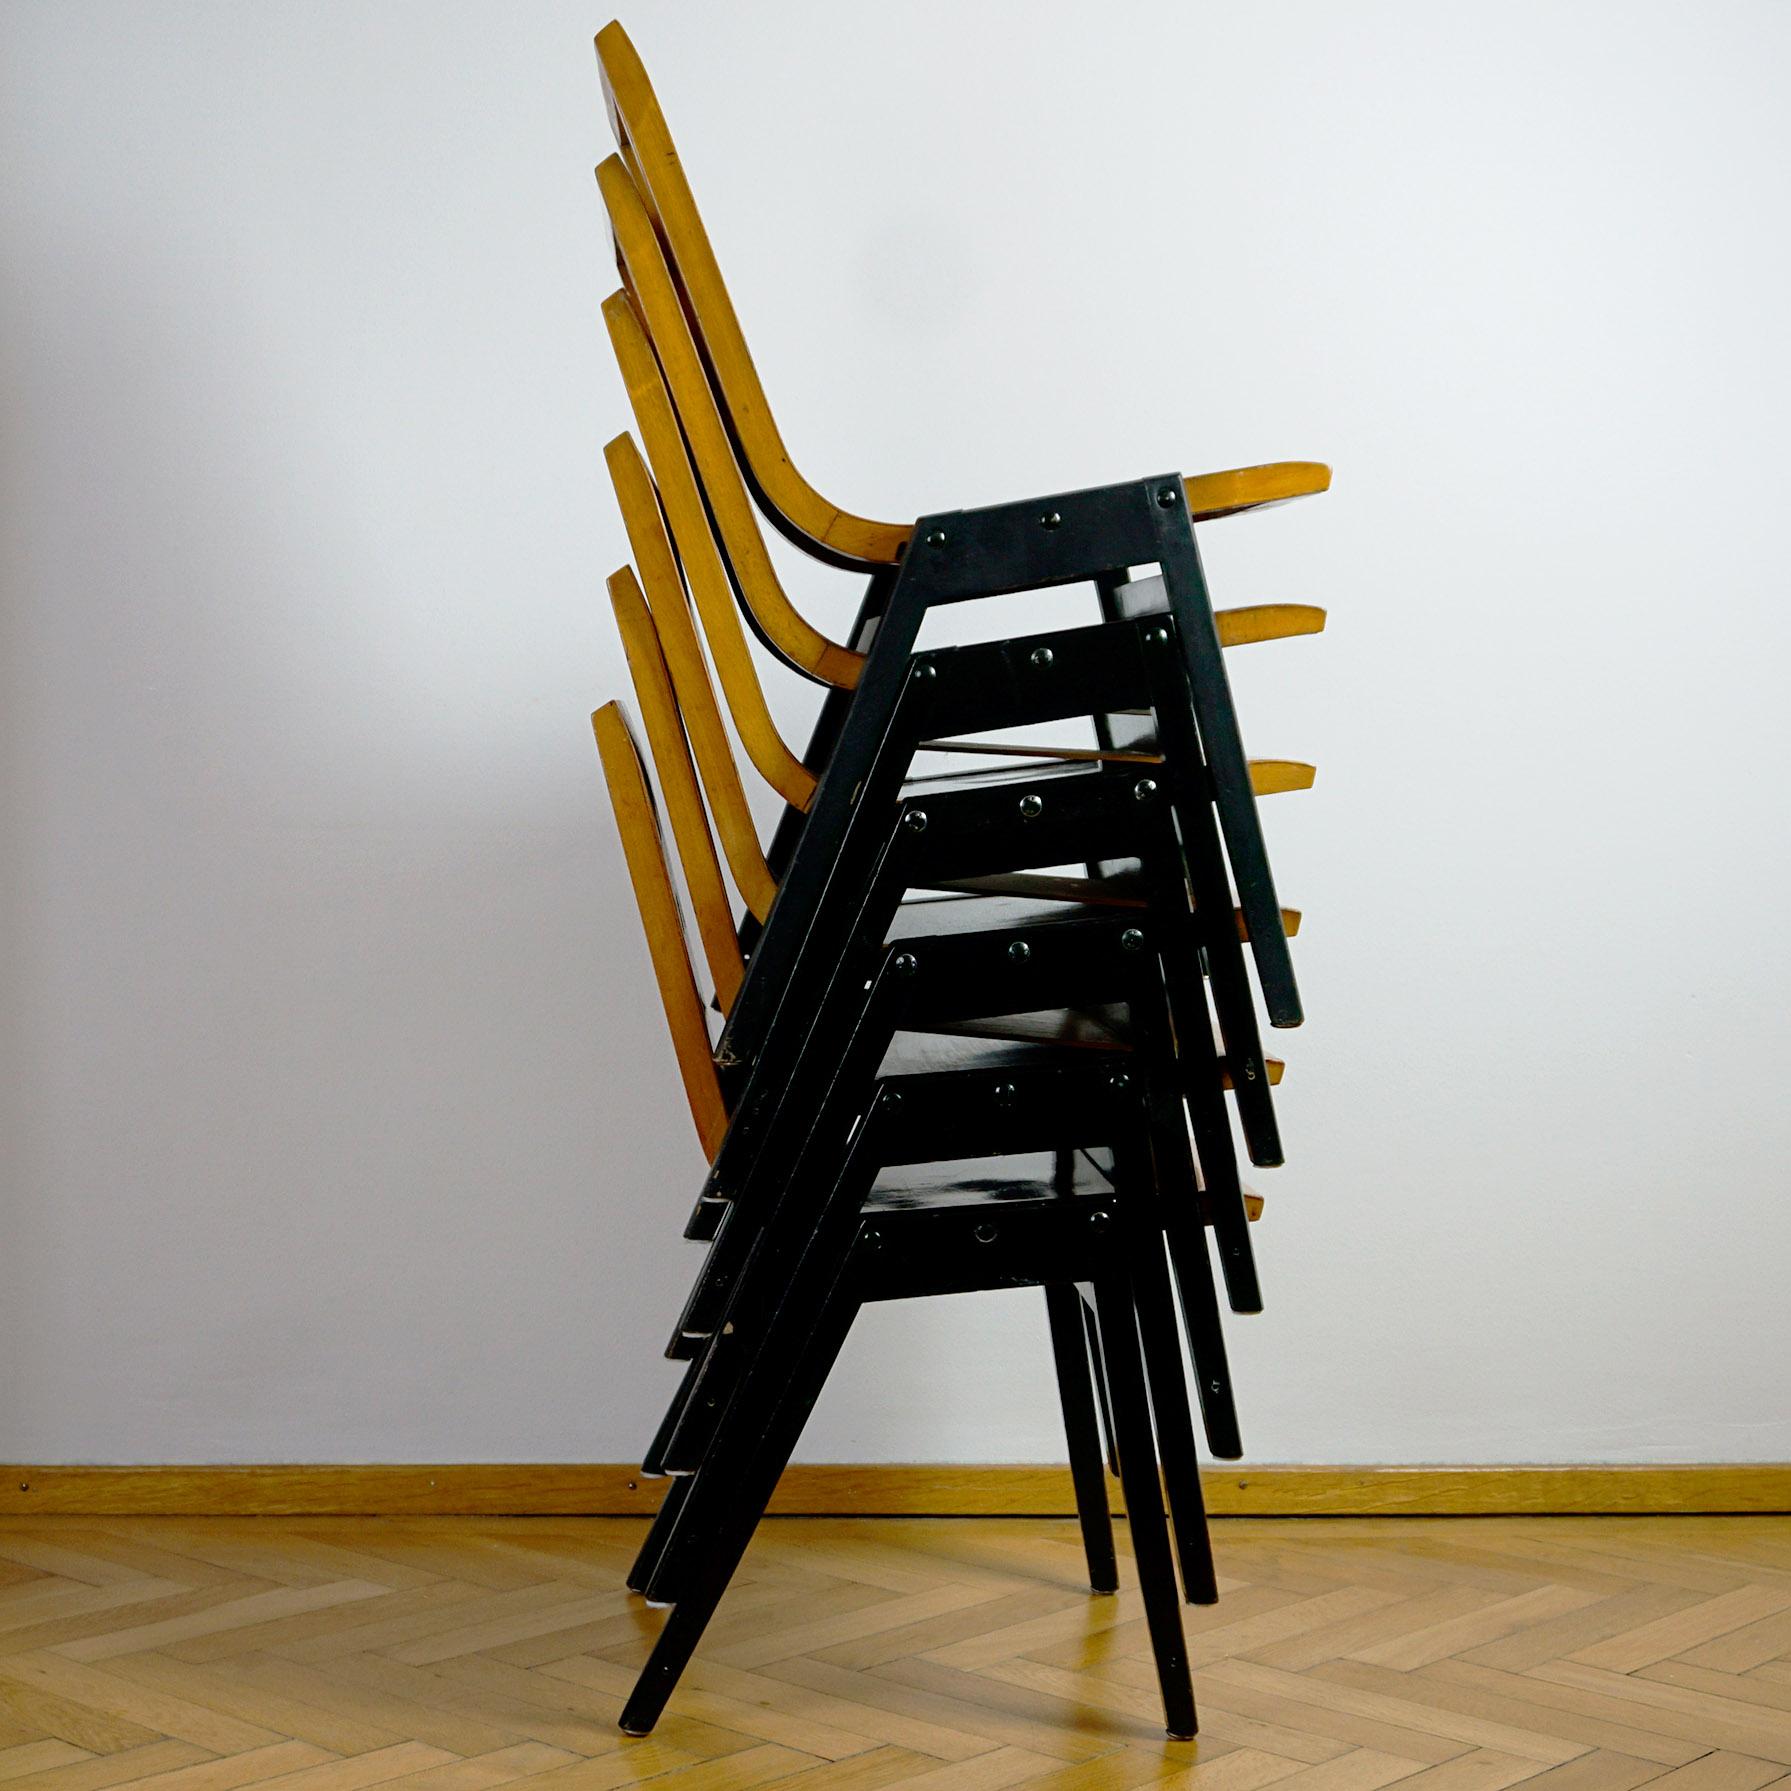 Ein Satz von sechs stapelbaren Stühlen aus Buchensperrholz, entworfen von Prof. Roland Rainer im Jahr 1951.
Roland Rainer verwendete diese Stühle für die Wiener Stadthalle in den Jahren 1956-1962. Der Stuhl wurde danach als der bekannte